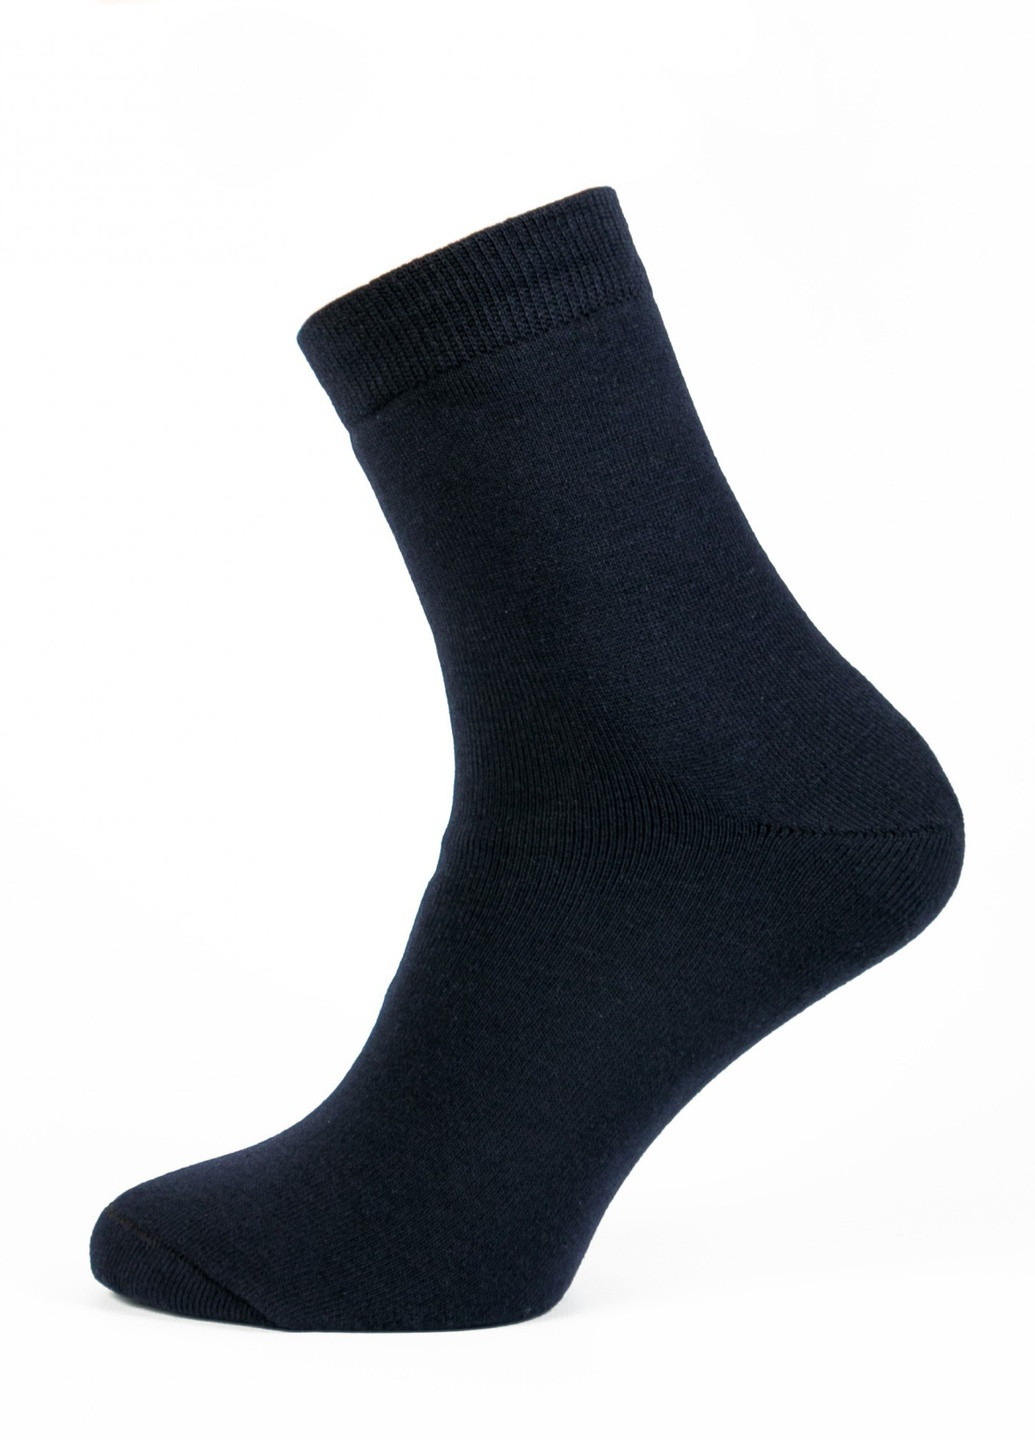 Шкарпетки чоловічі ТМ "Нова пара" 428 НОВА ПАРА середня висота (257062319)